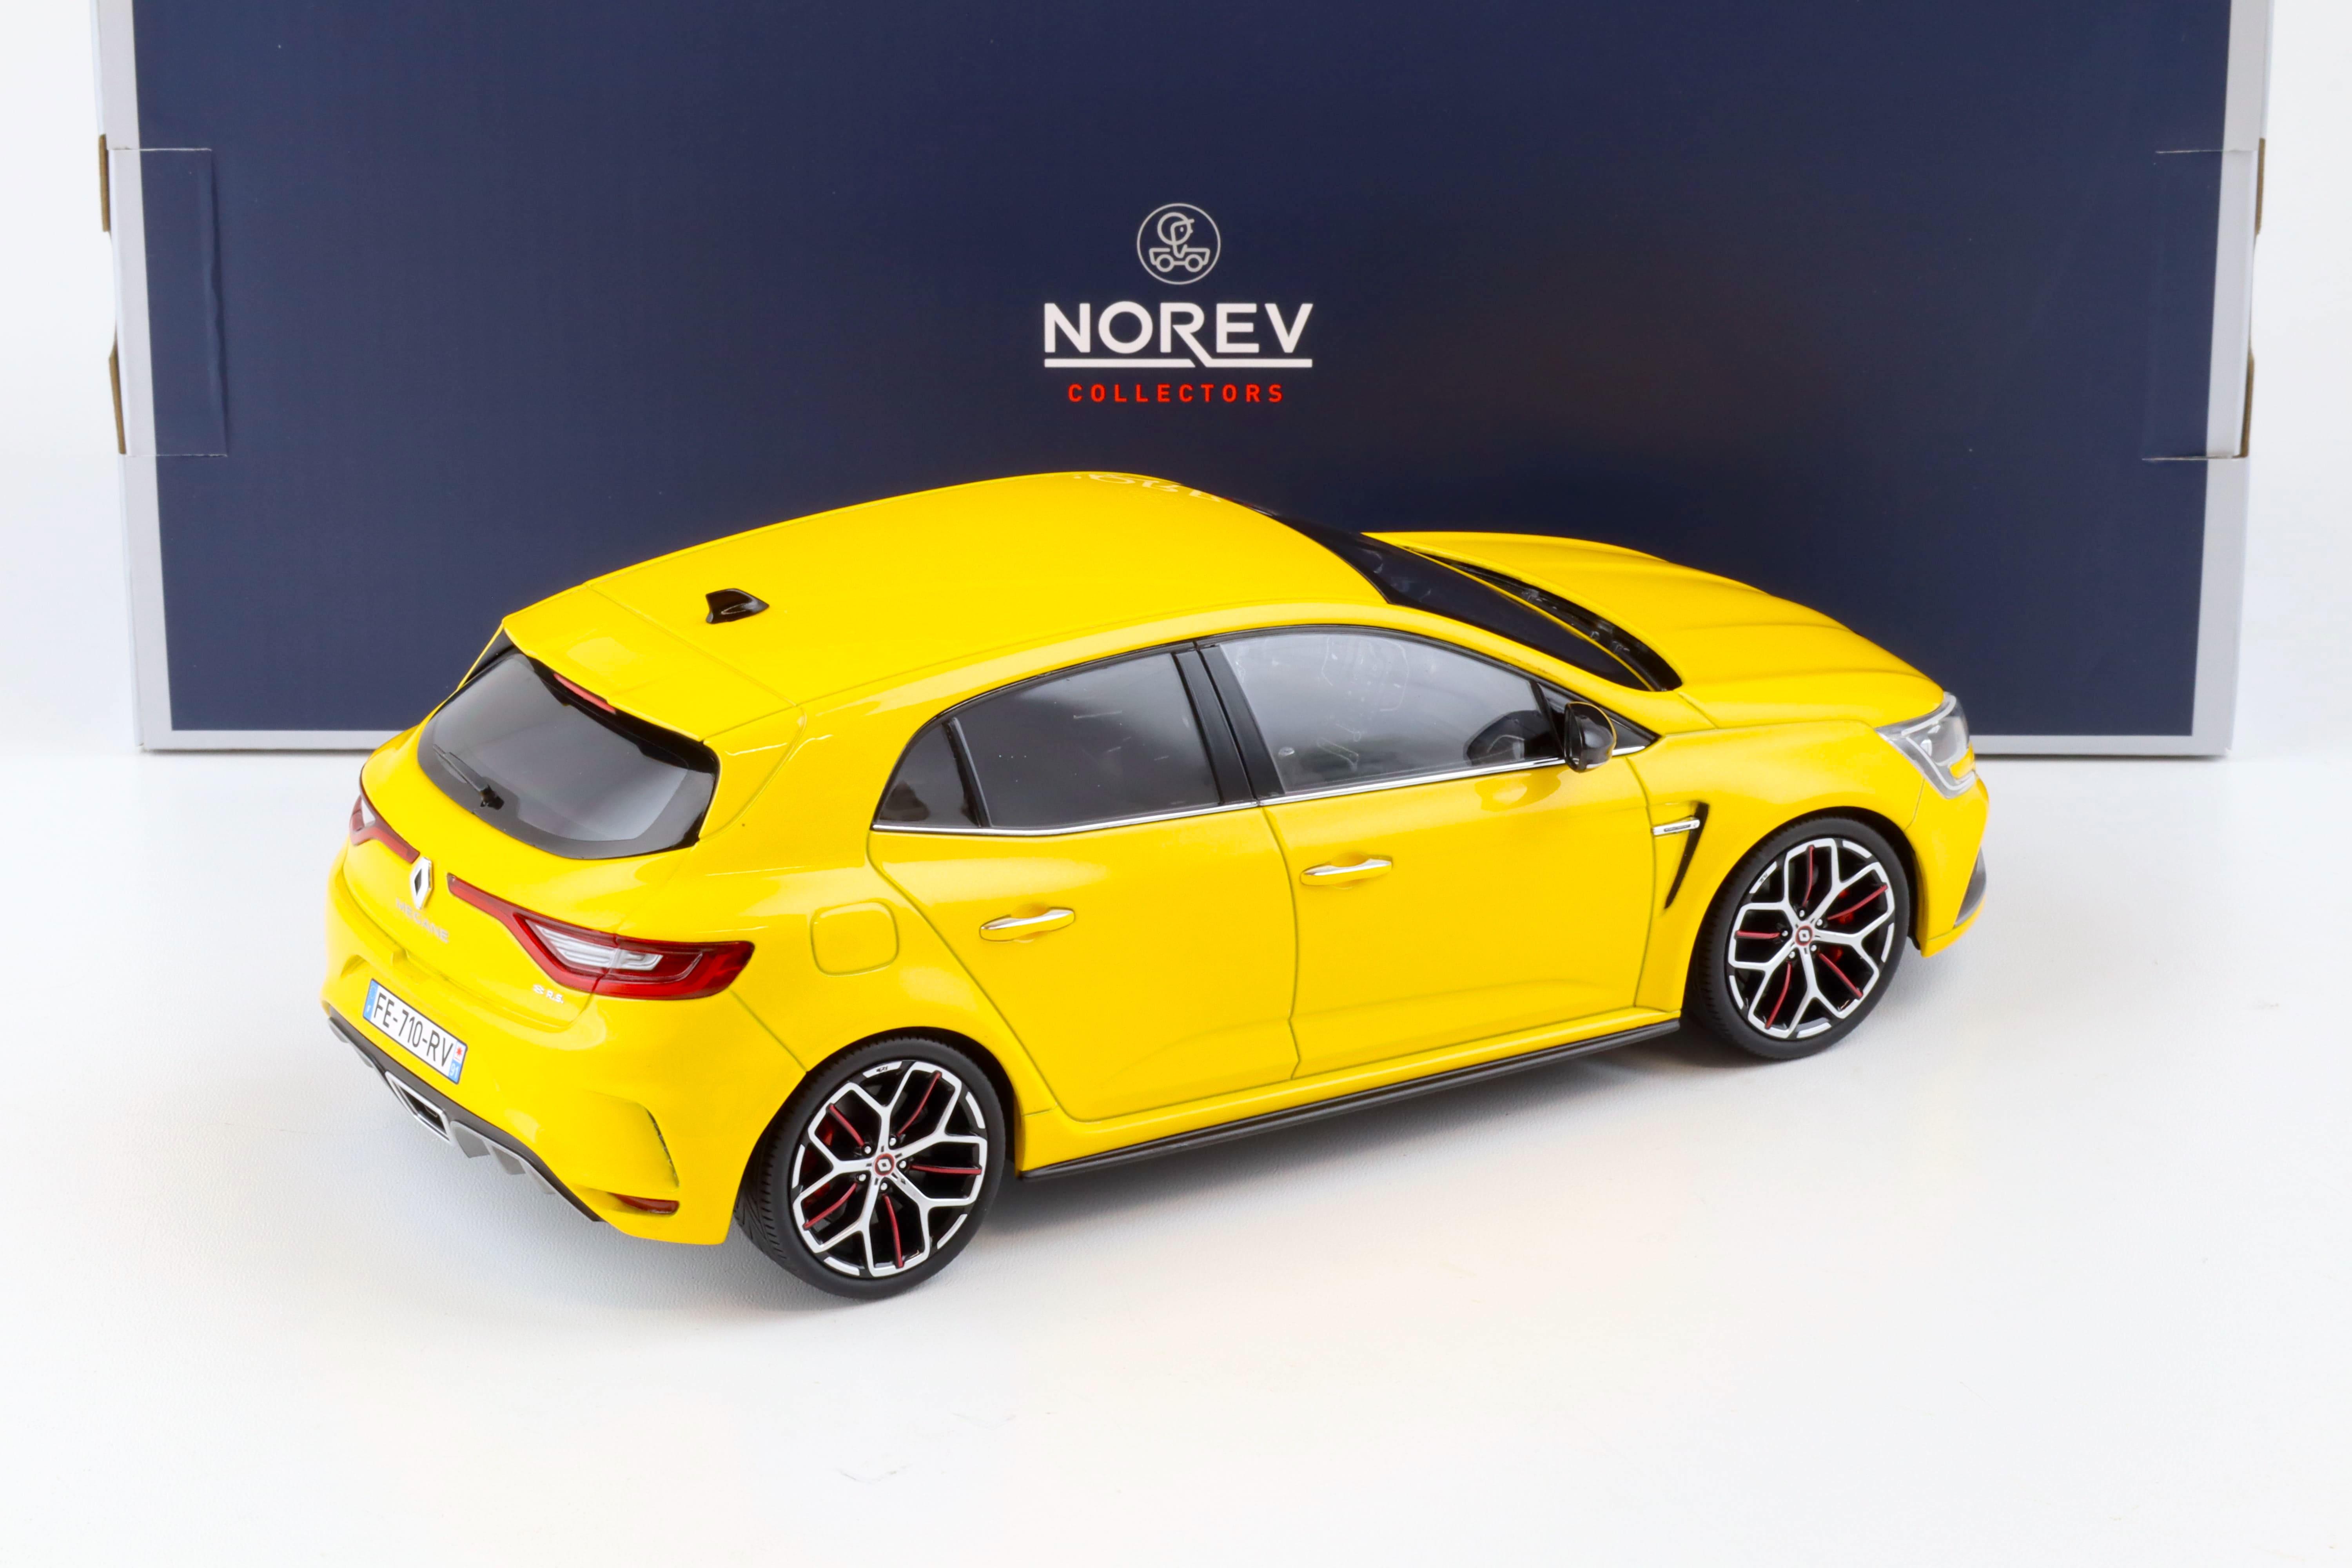 1:18 Norev Renault Megane R.S. Trophy 2019 Sirius yellow 185393